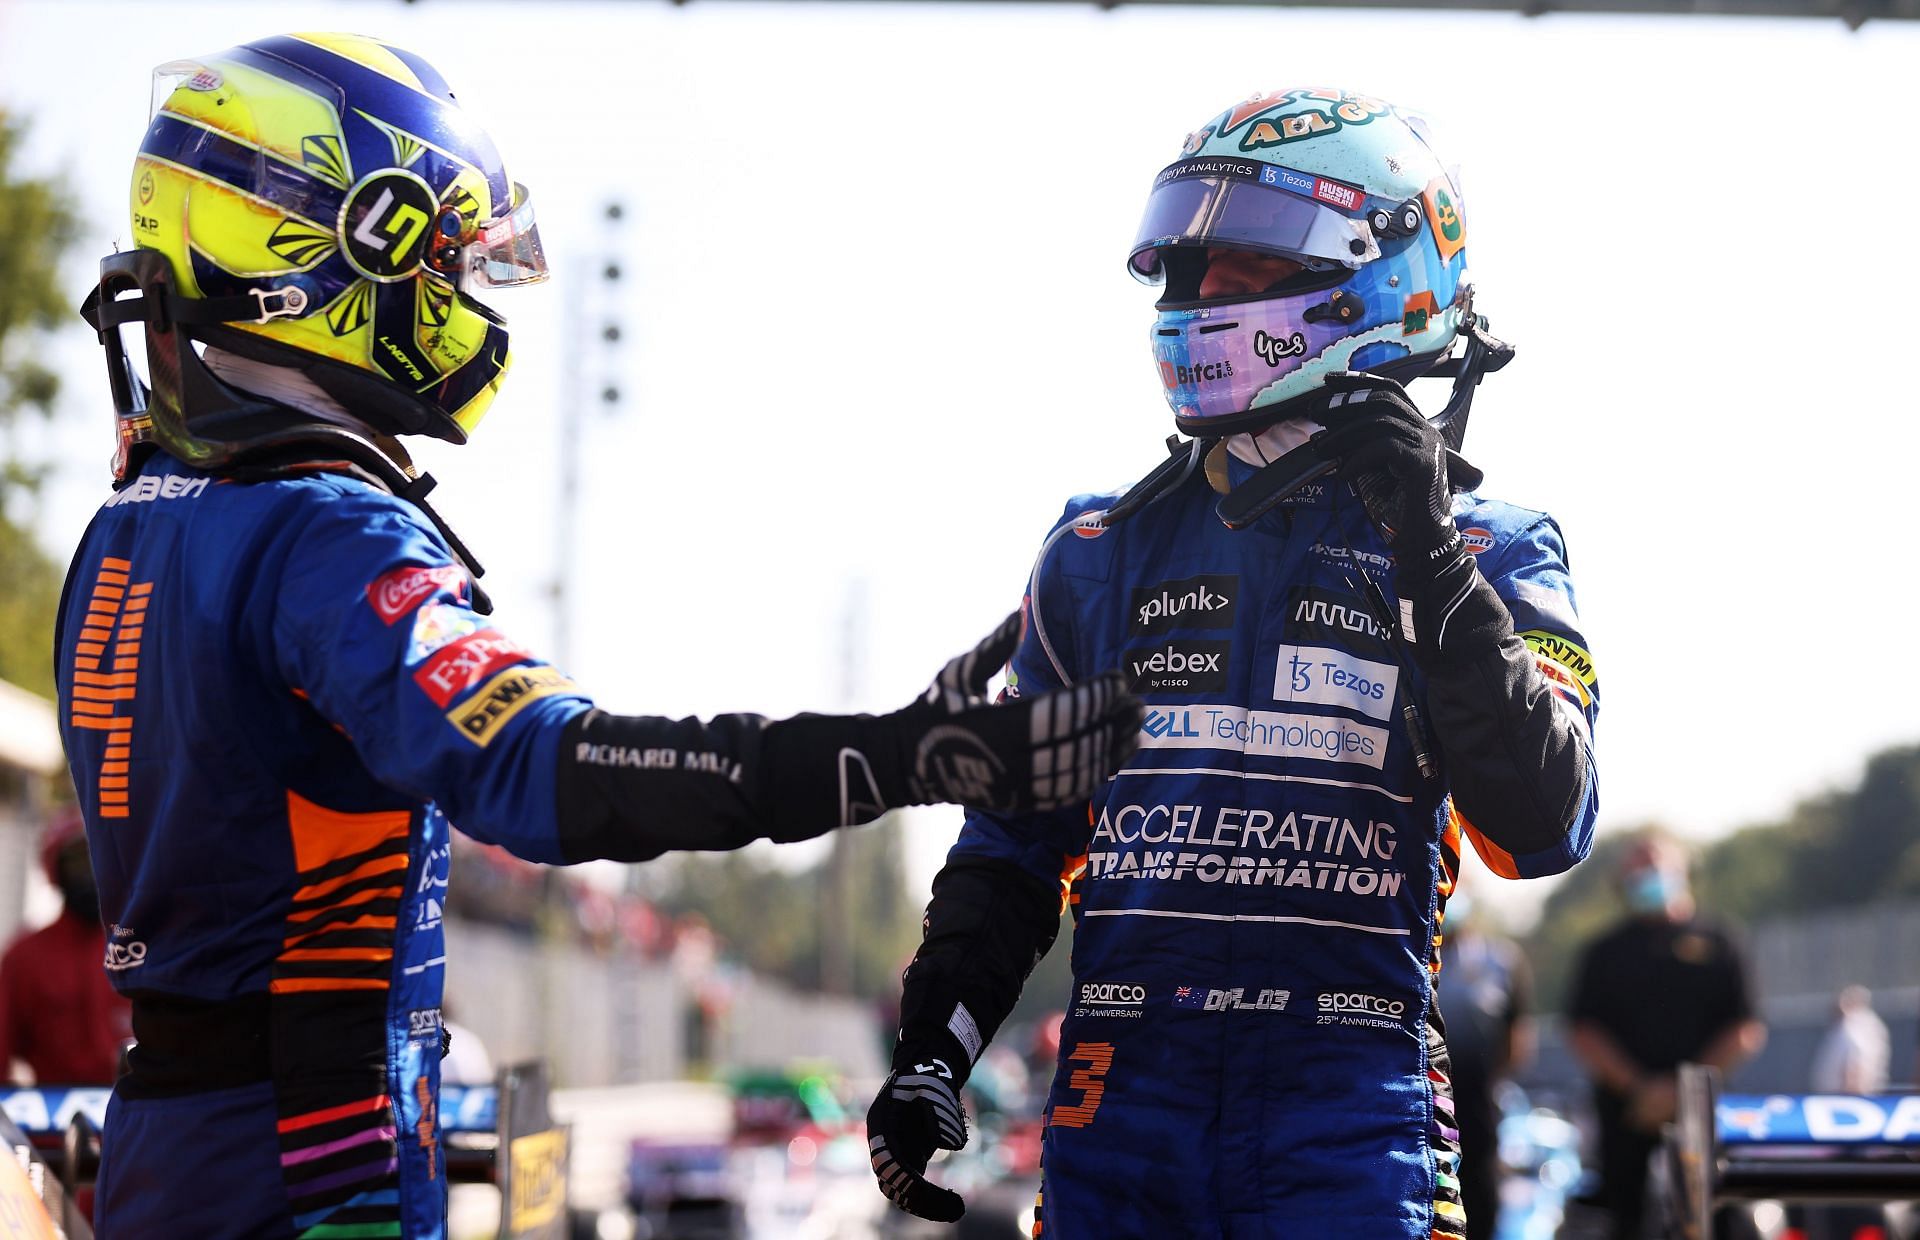 Lando Norris (left) and Daniel Ricciardo (right) at the F1 Grand Prix of Italy